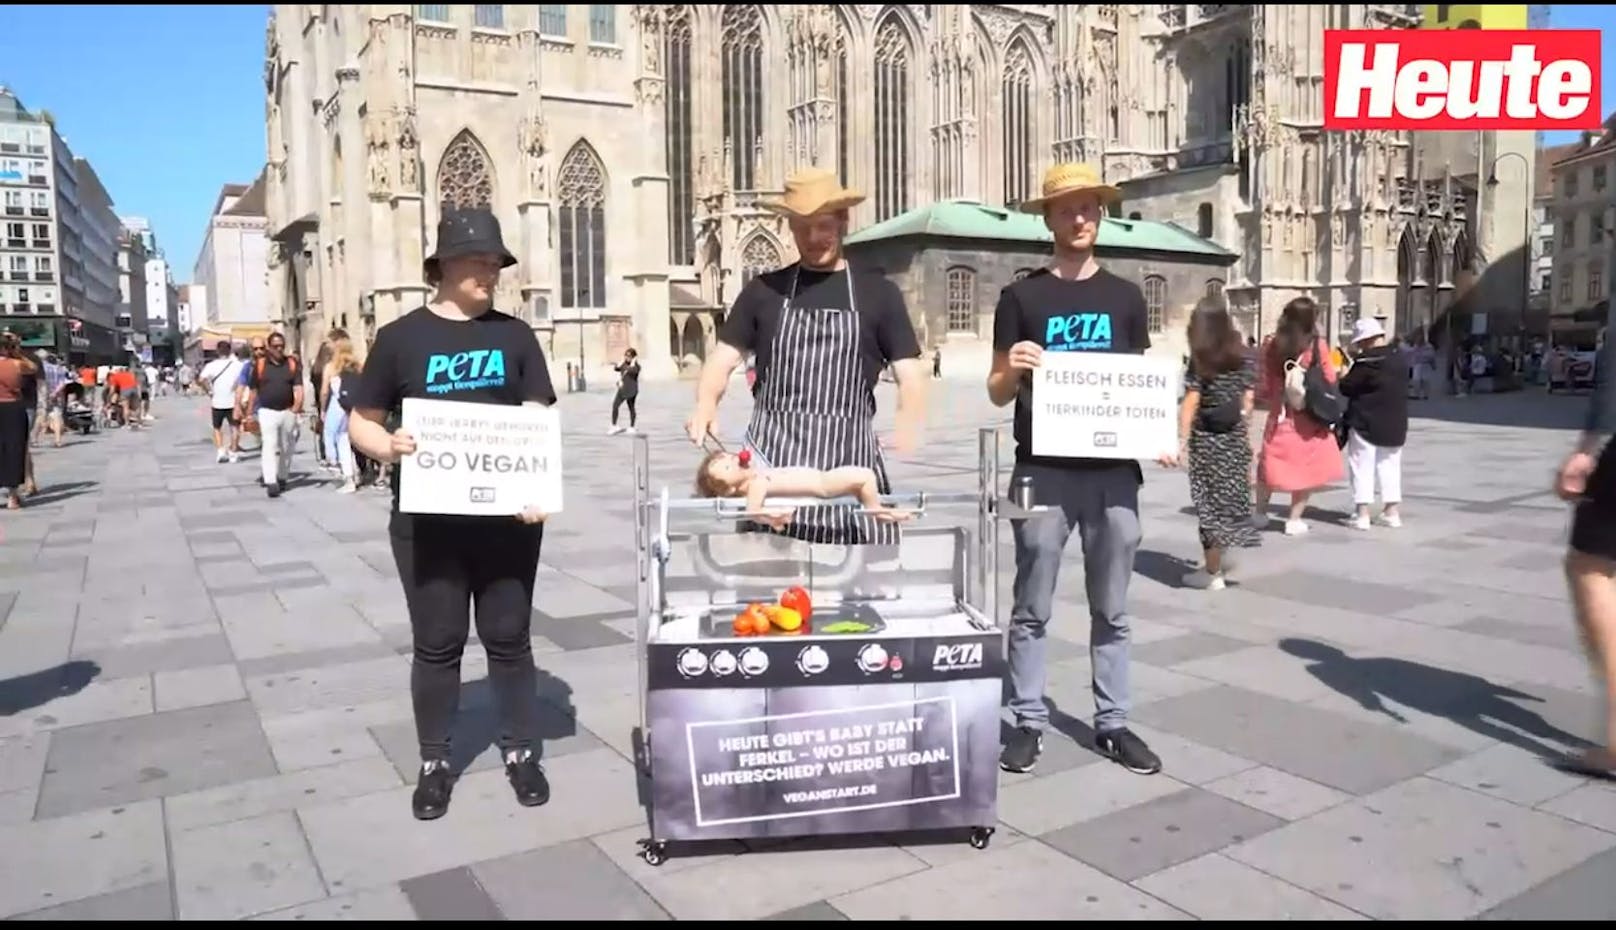 Tierschützer grillen "Menschenbaby" am Stephansplatz